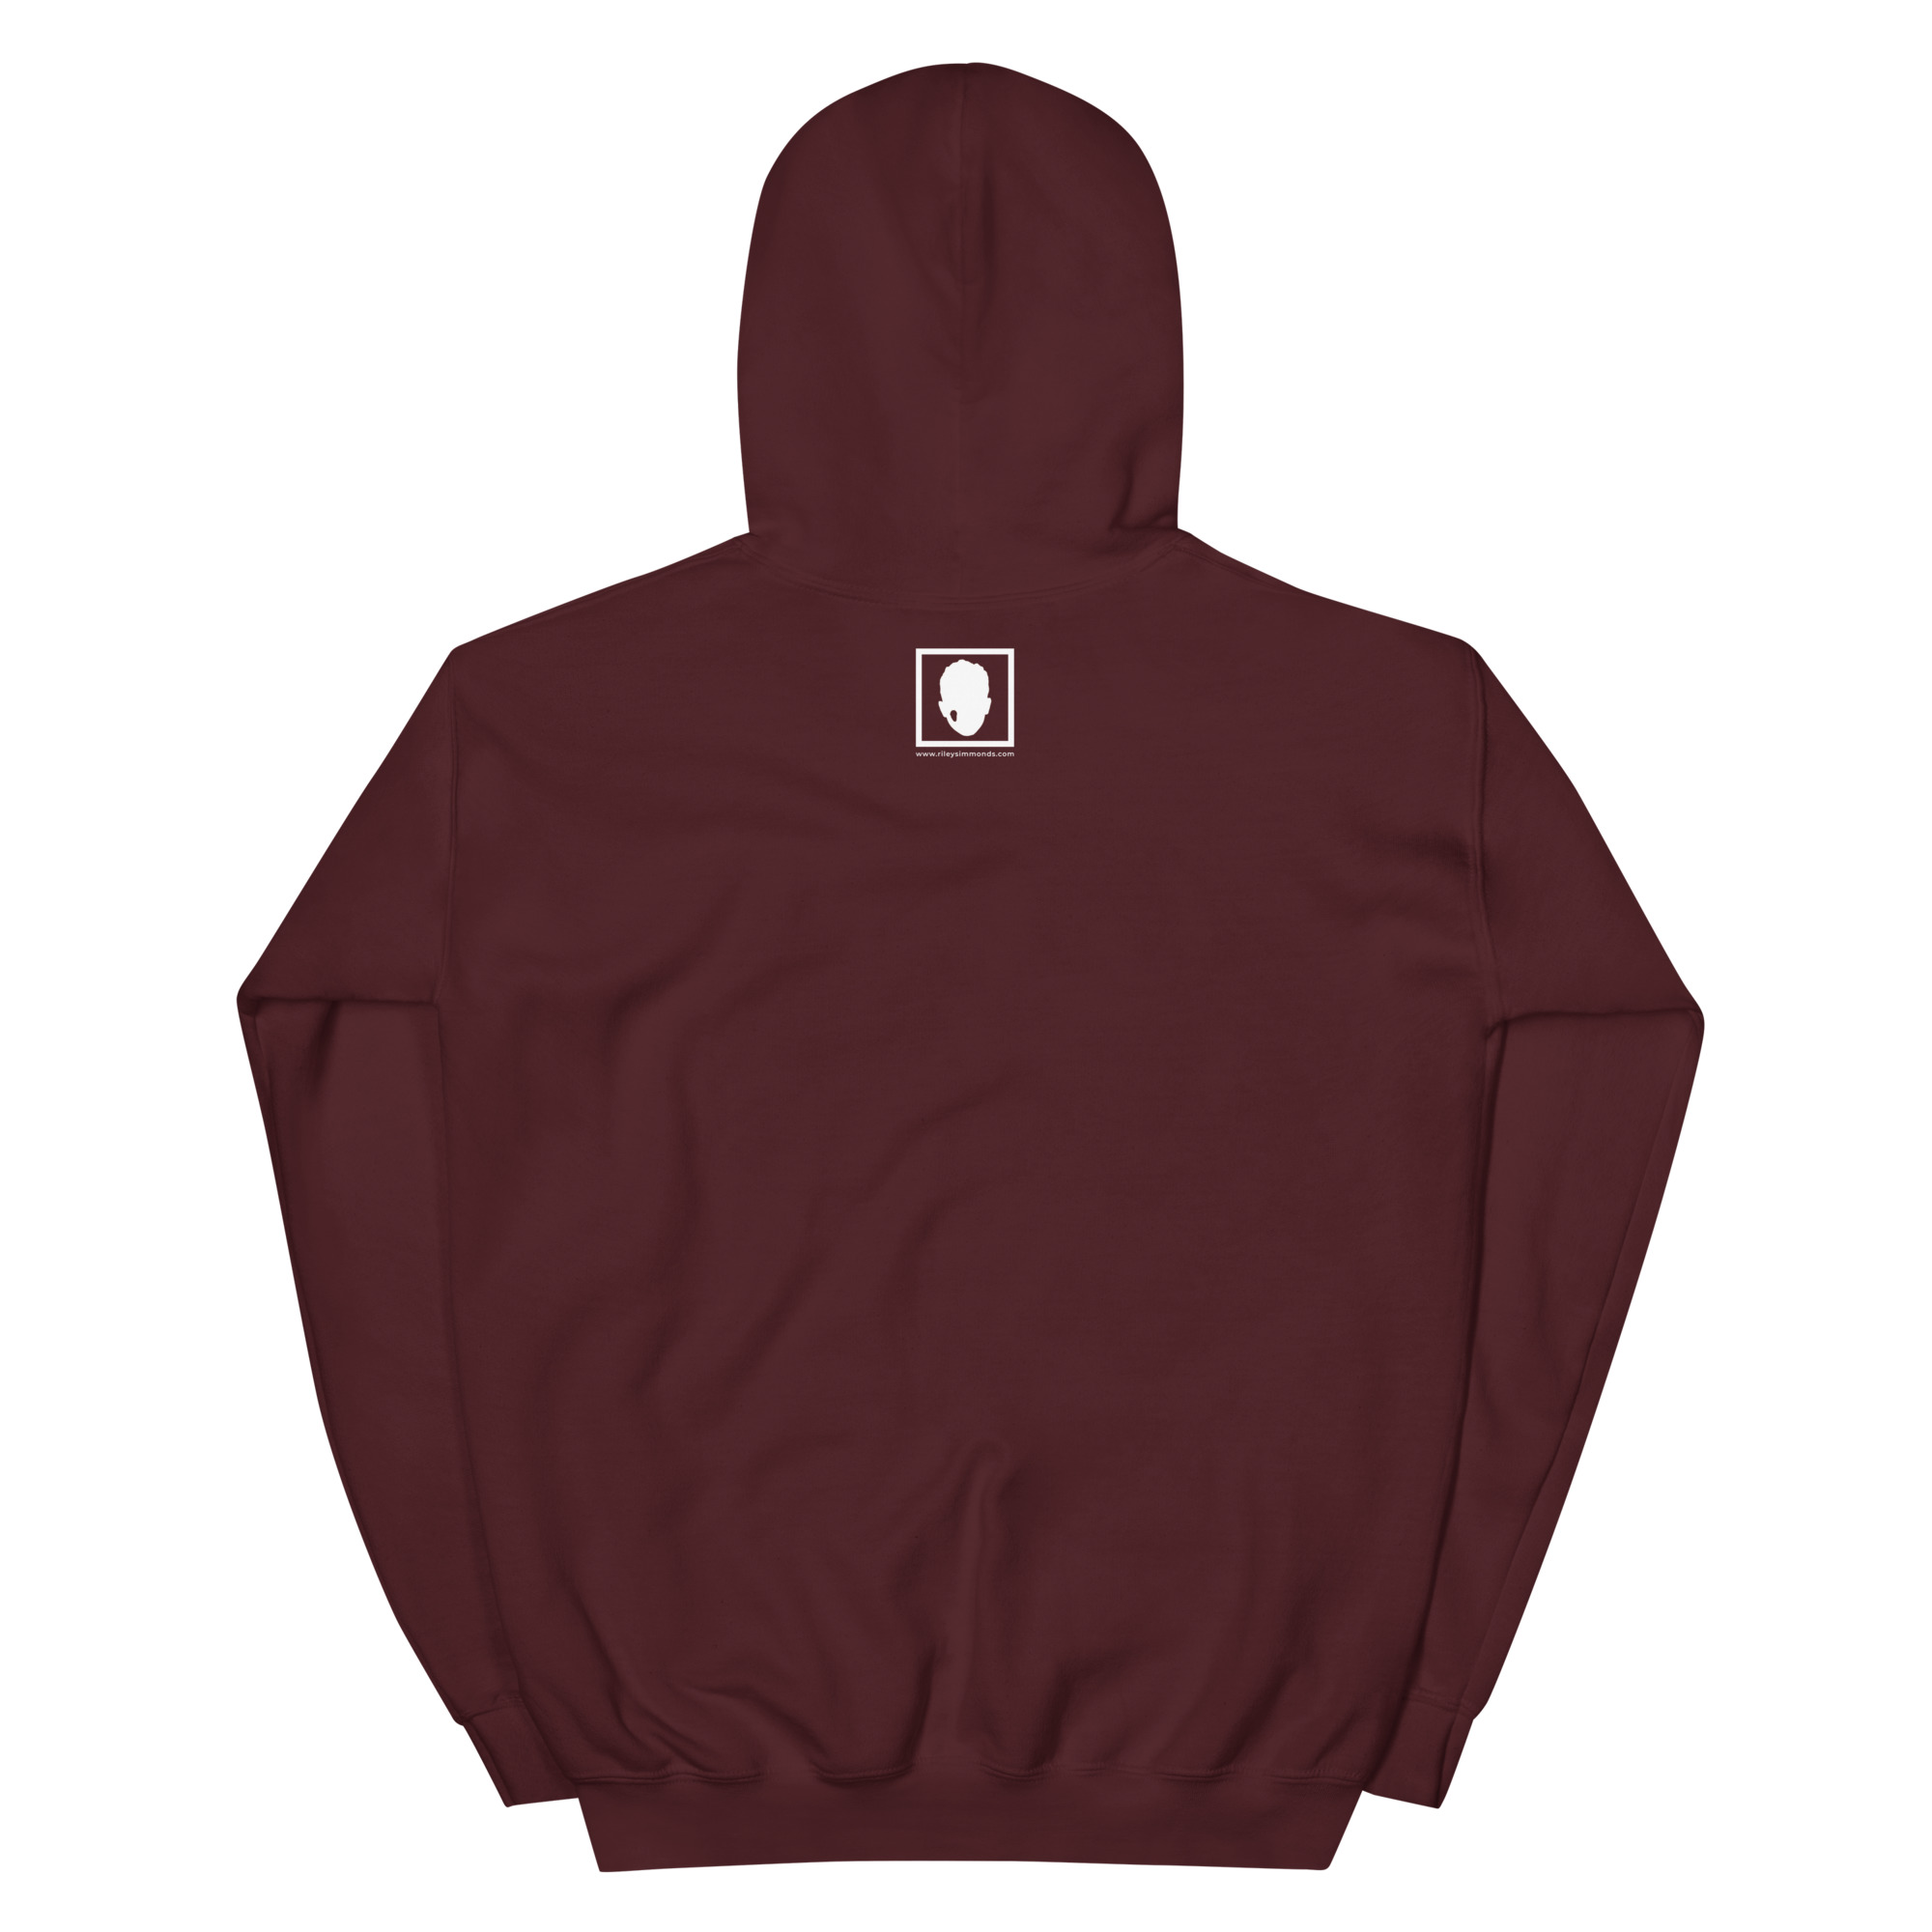 unisex-heavy-blend-hoodie-maroon-back-65370b88121f4.jpg